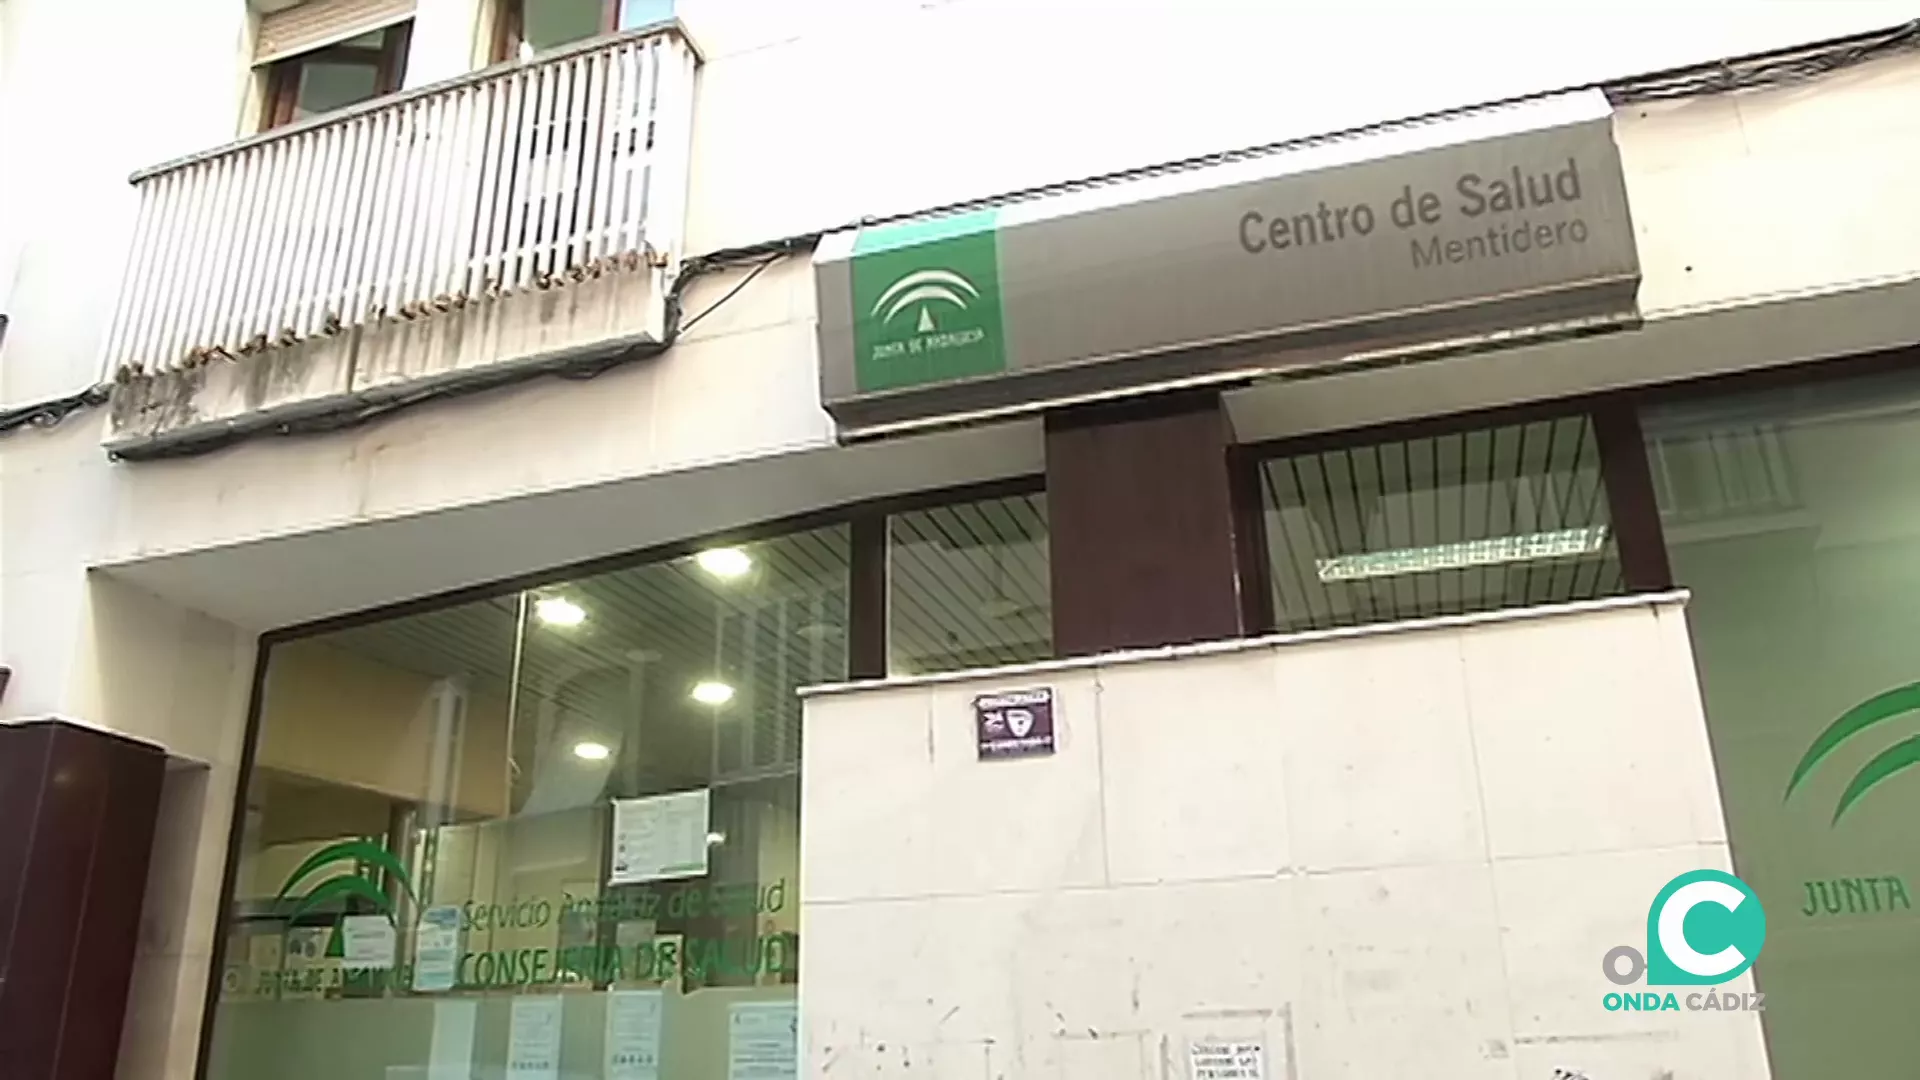 Centro Salud Mentidero